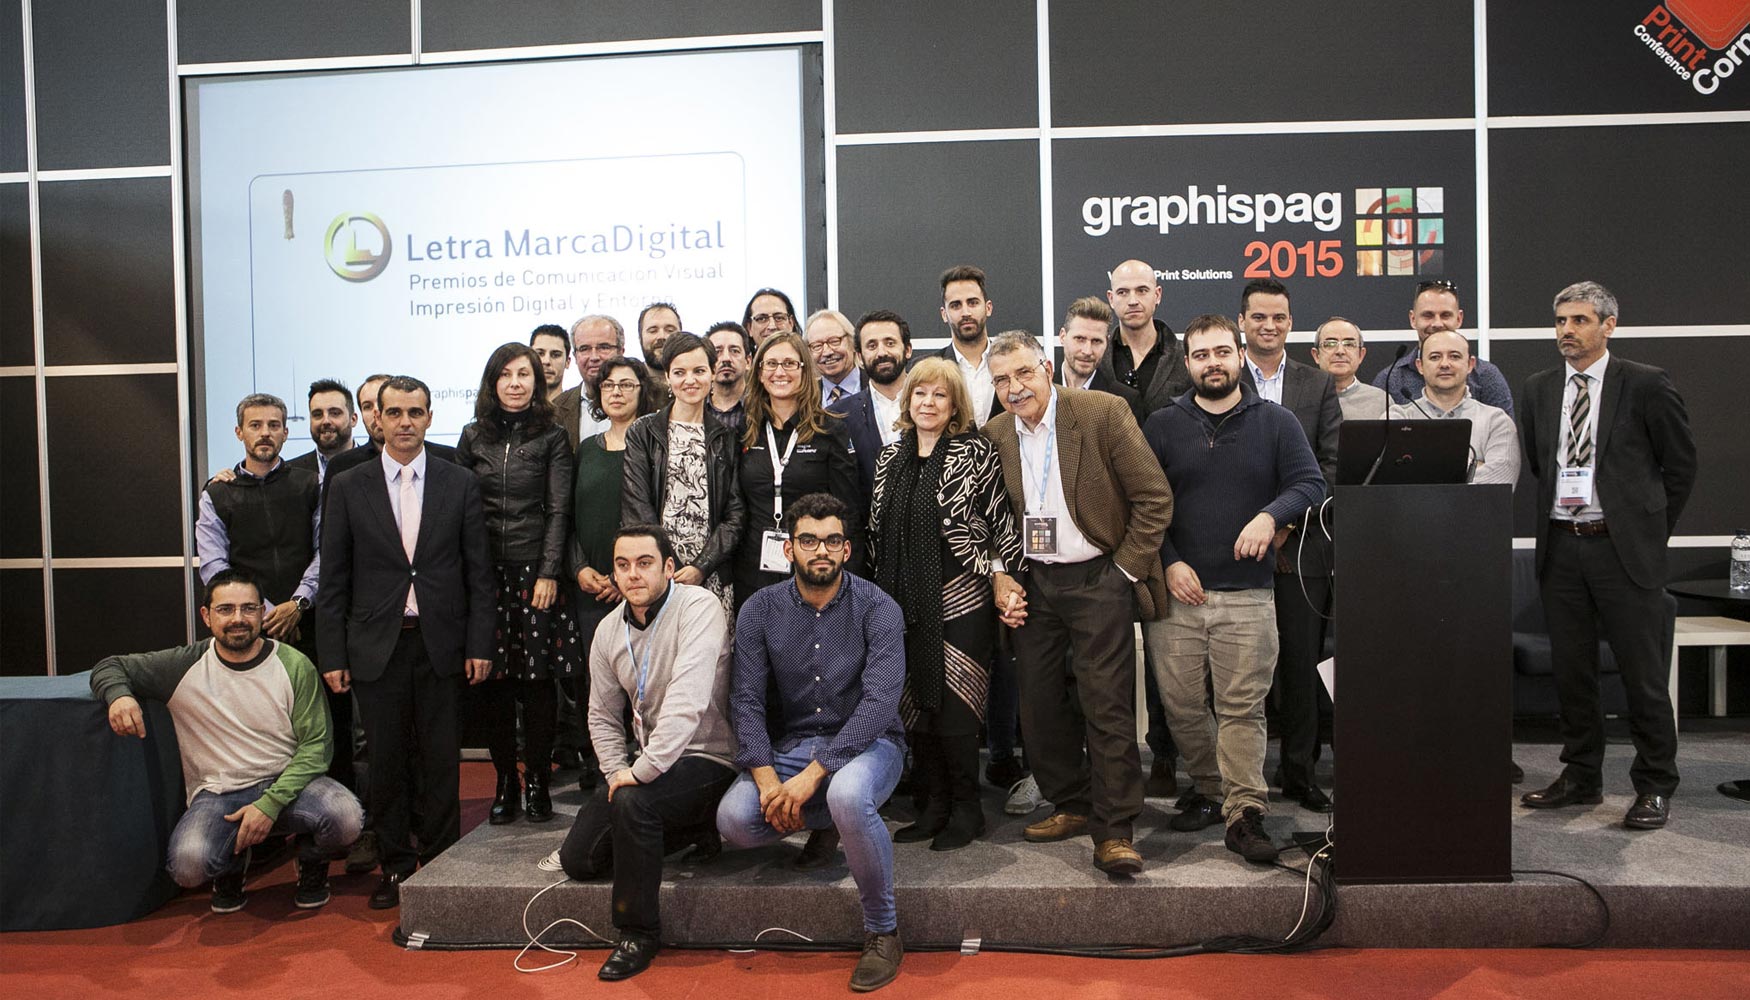 Foto de familia de los galardonados de los Premios Letra_Marca Digital 2014, en Graphispag 2015